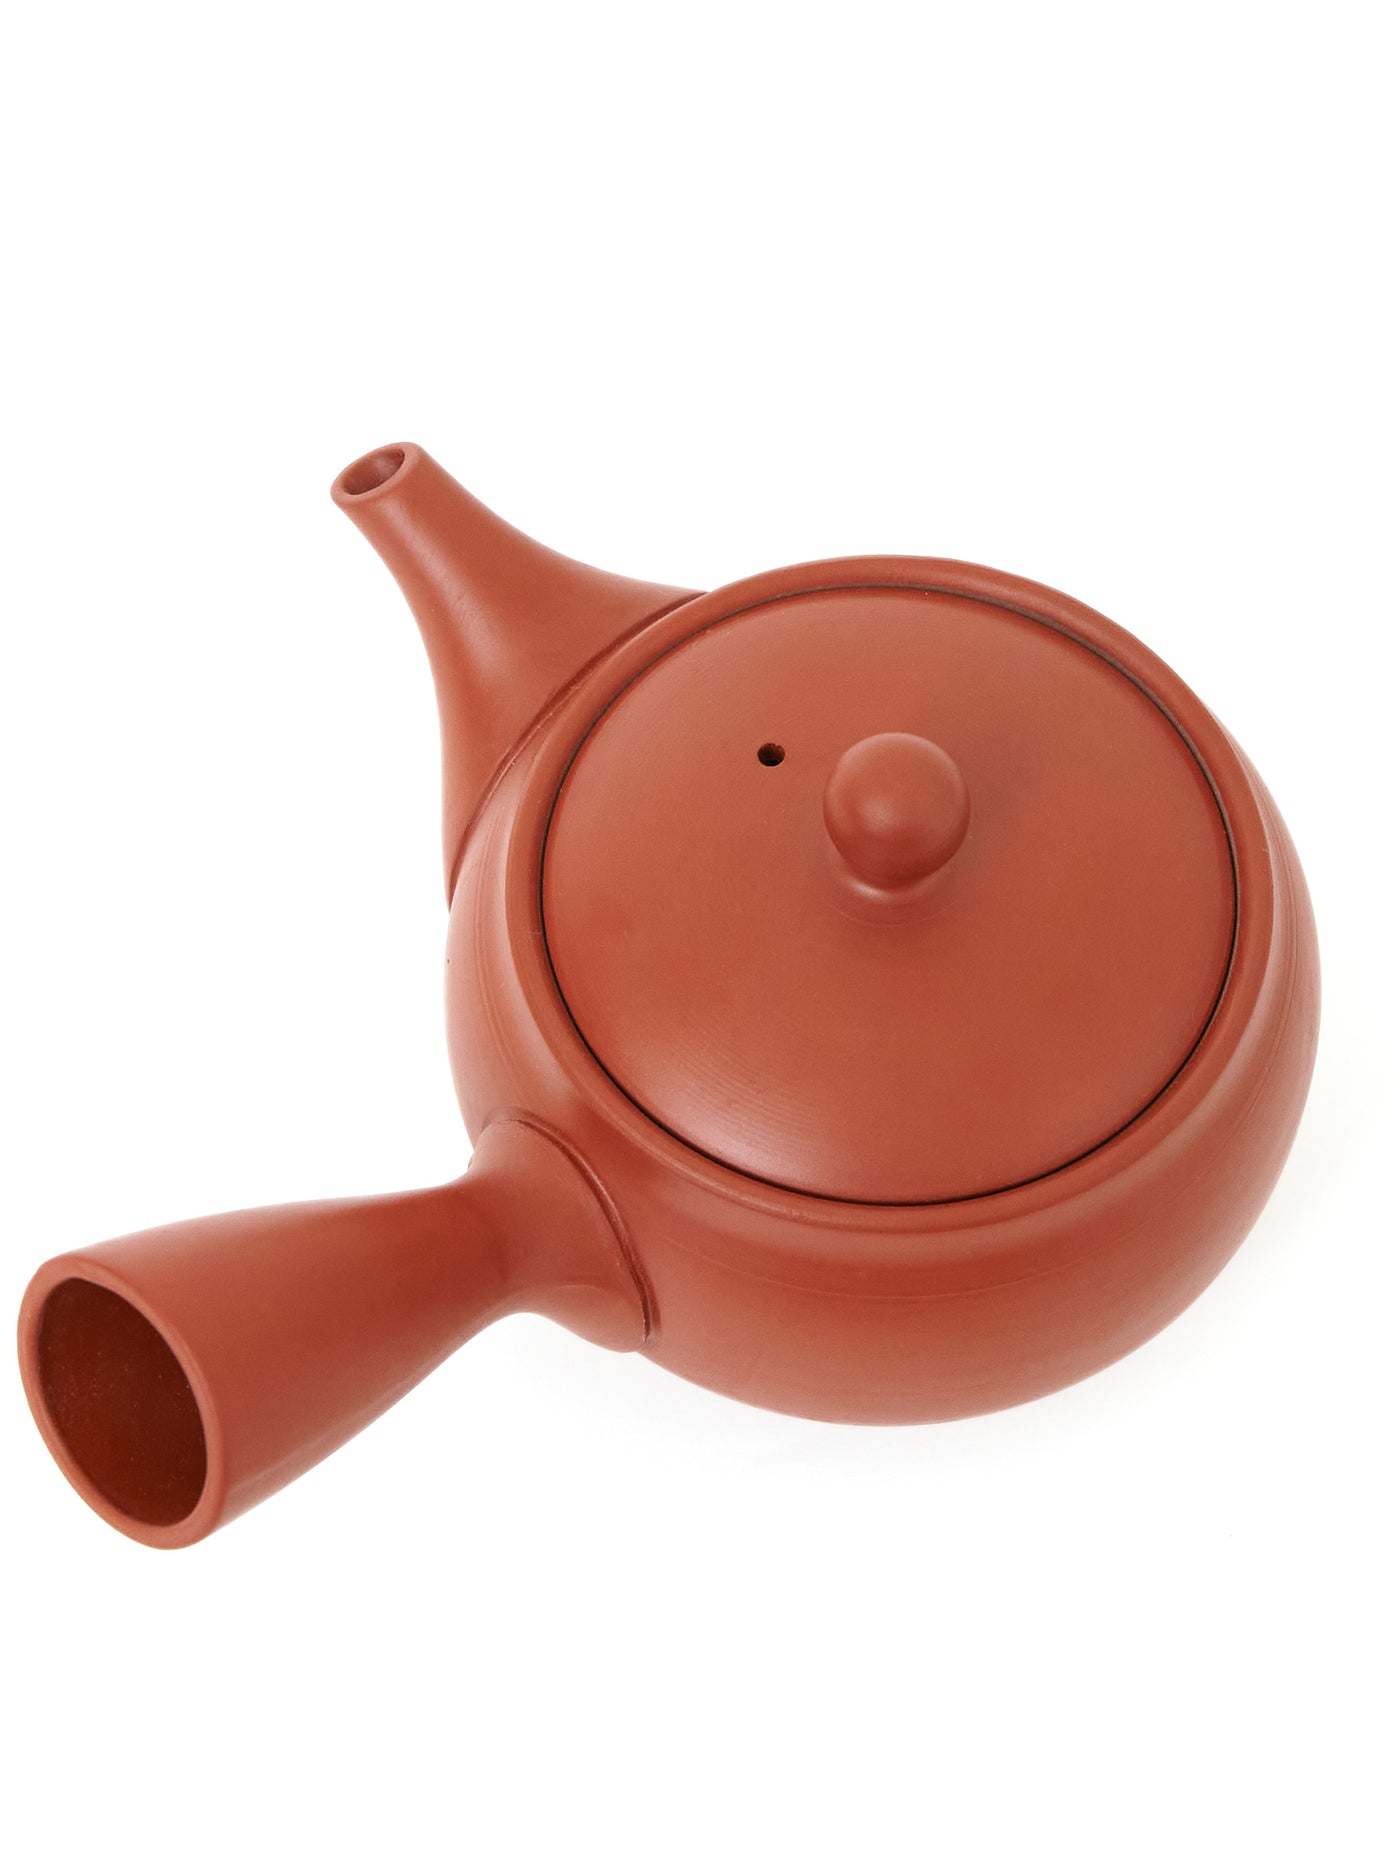 Red Clay Tokoname Japanese Teapot (10.8oz/320ml)